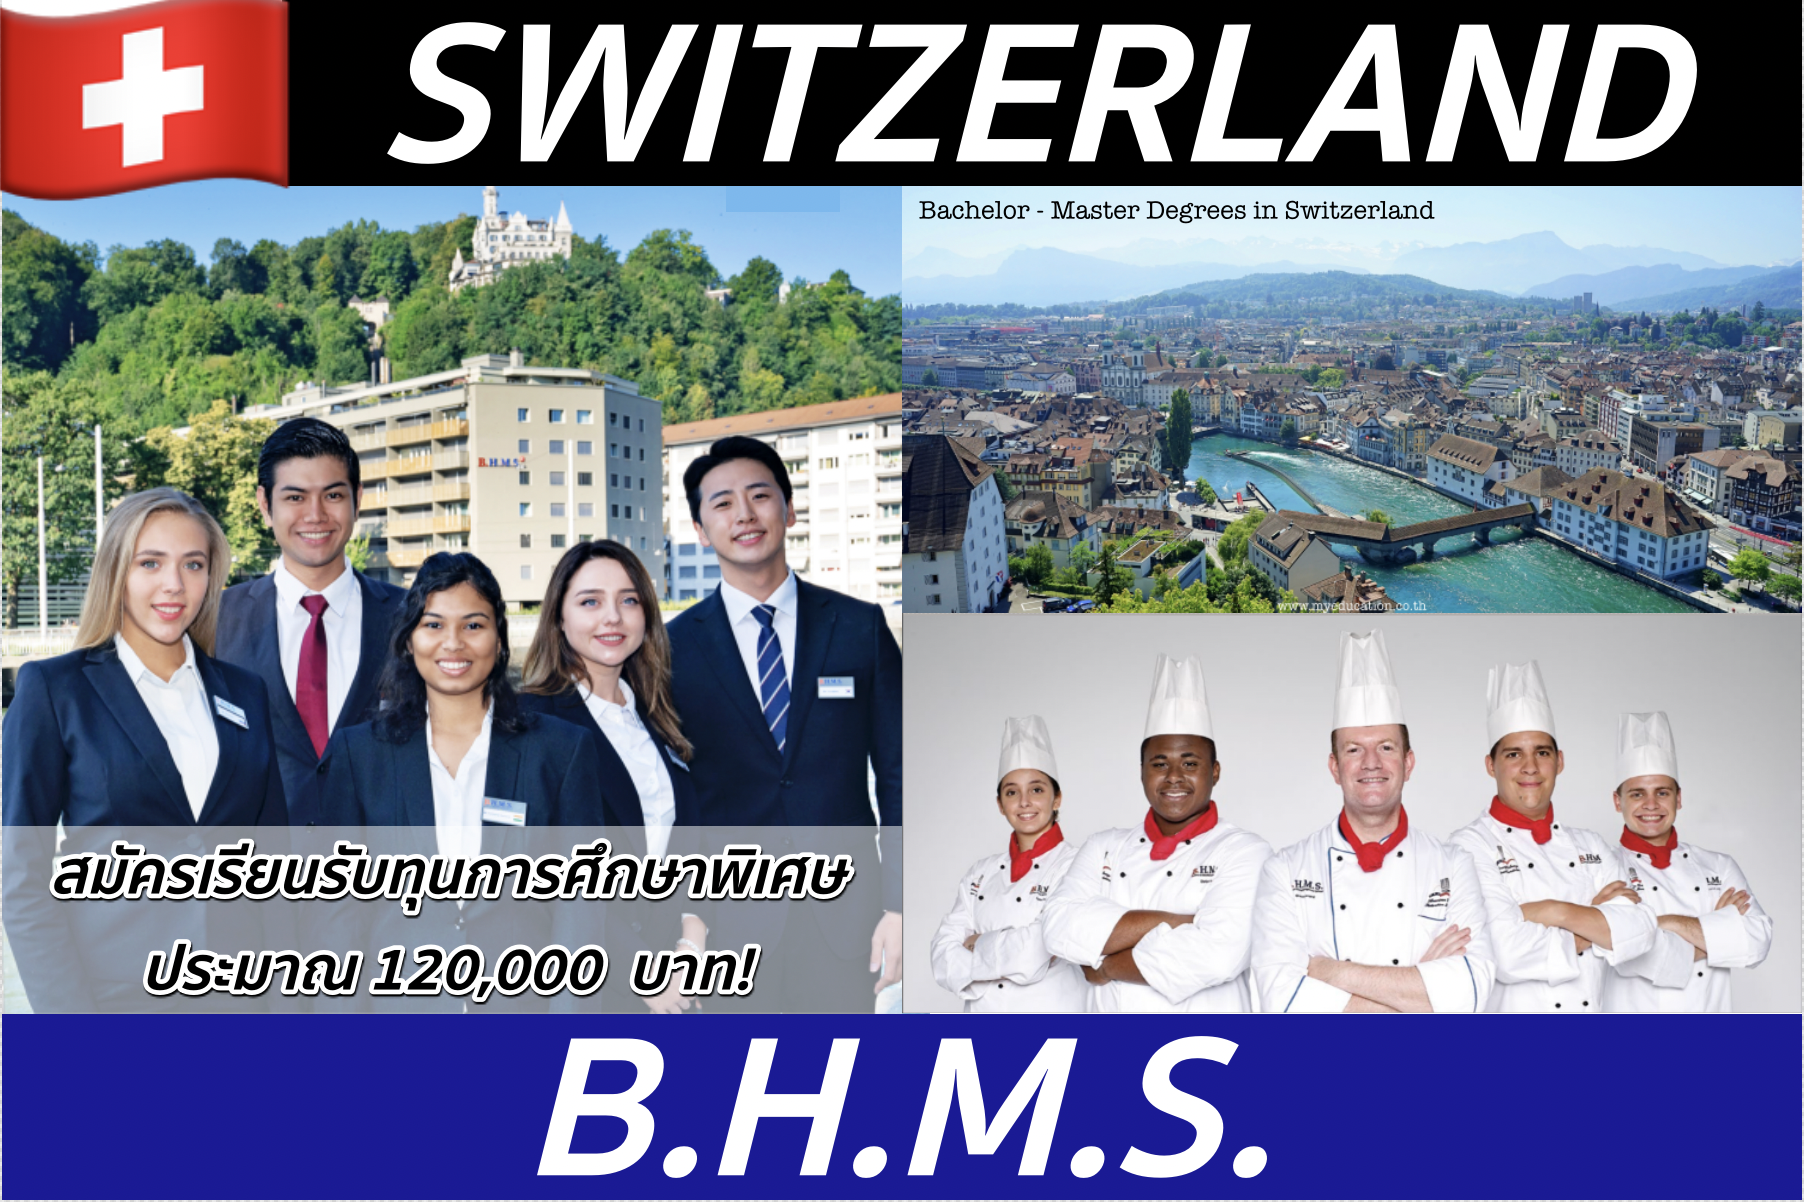 เรียน+ฝึกงานเงินเดือน 95,000! ป.ตรี-ป.โทที่ BHMS, Switzerland *สมัครรับทุนการศึกษาทุกหลักสูตร!*